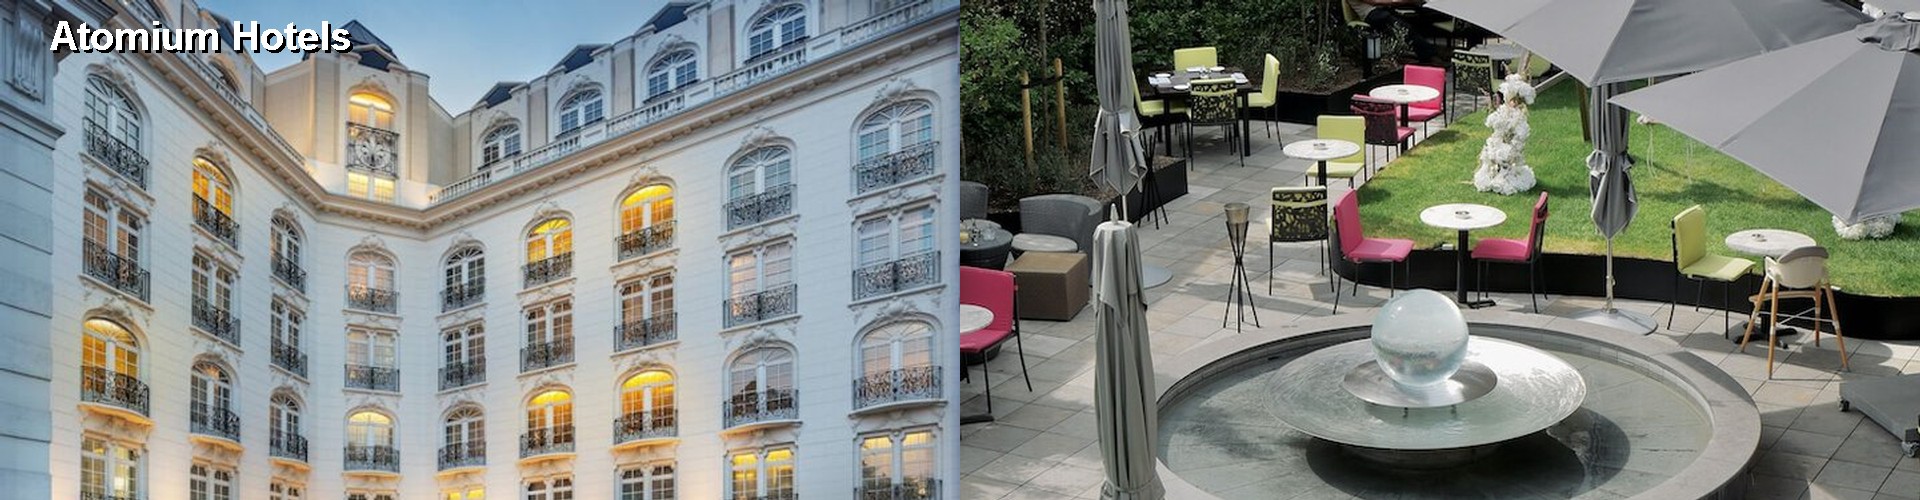 1 Best Hotels near Atomium